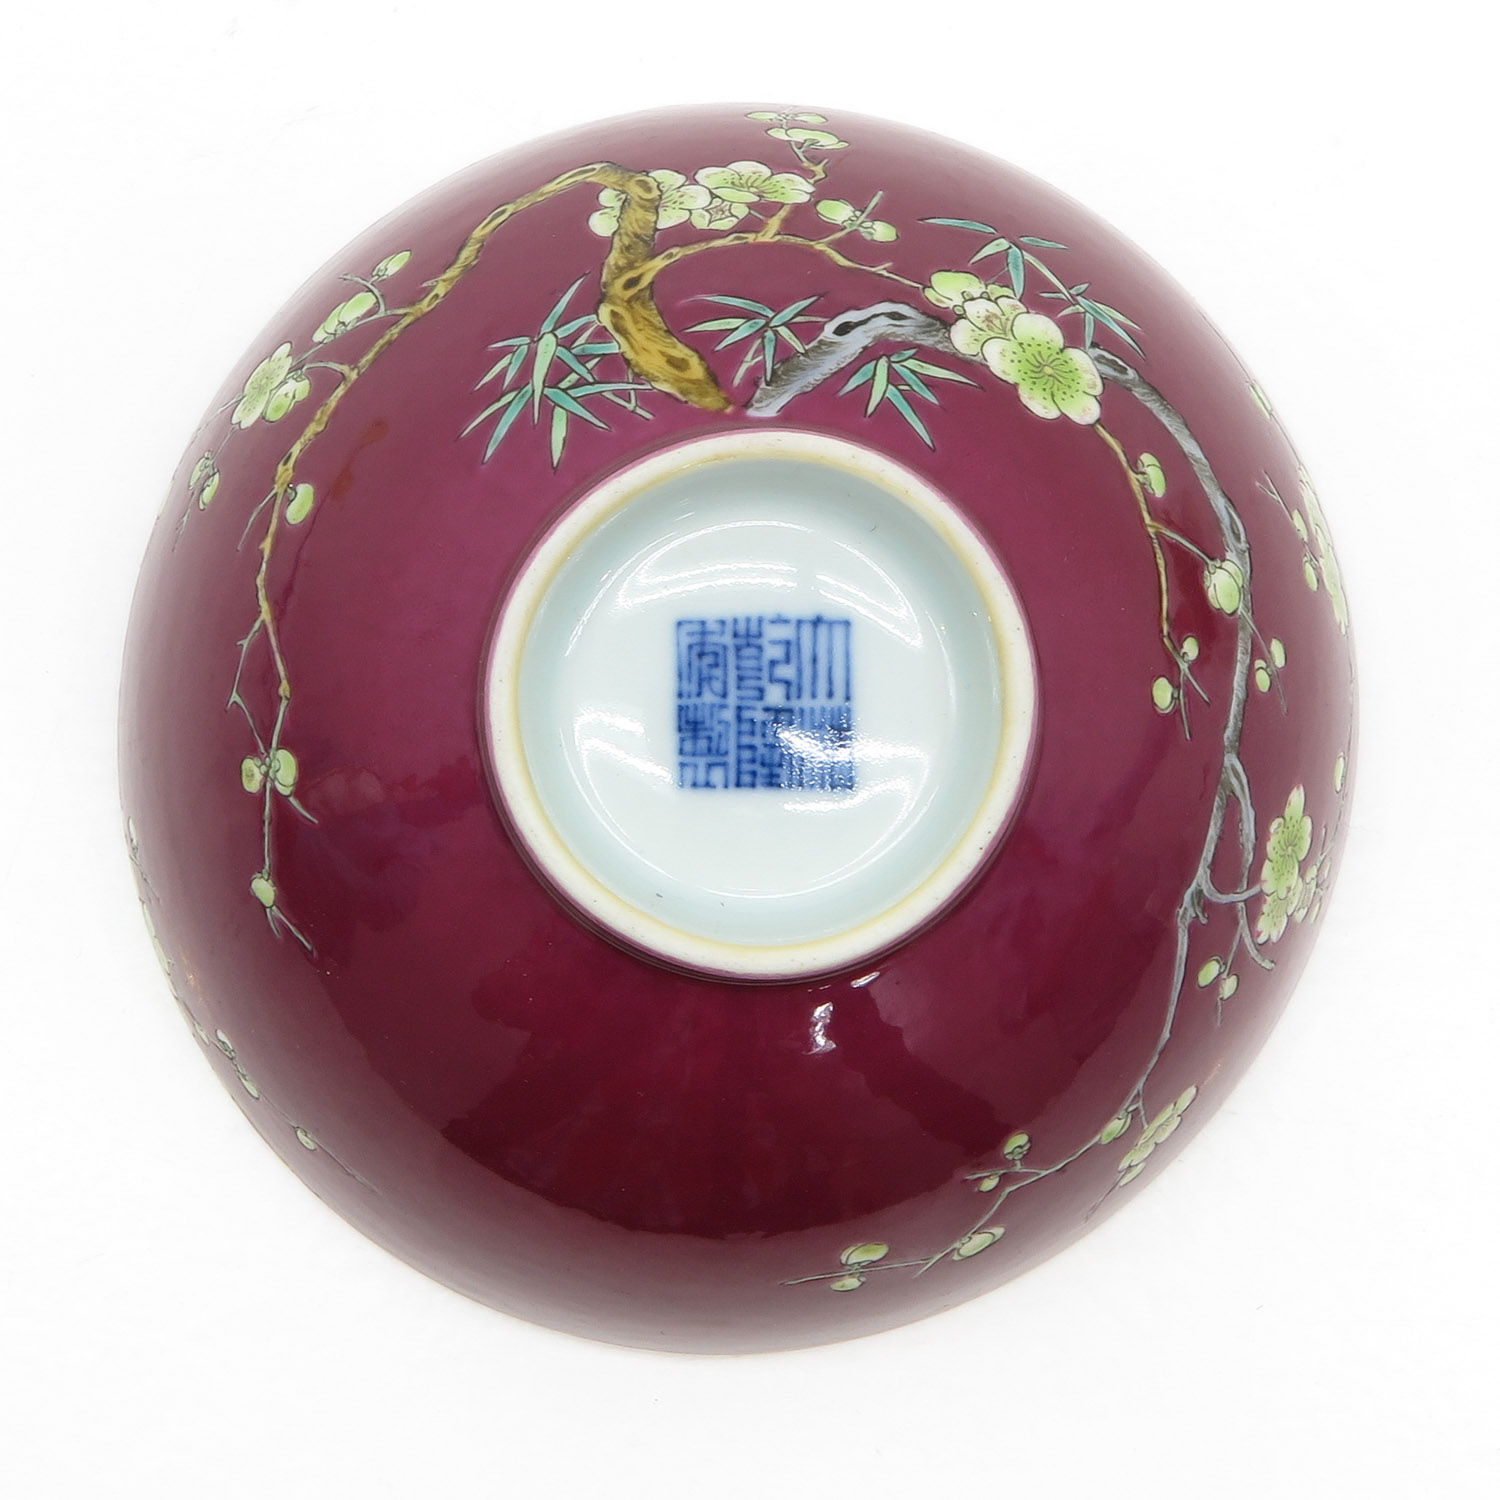 China Porcelain Bowl - Image 6 of 6